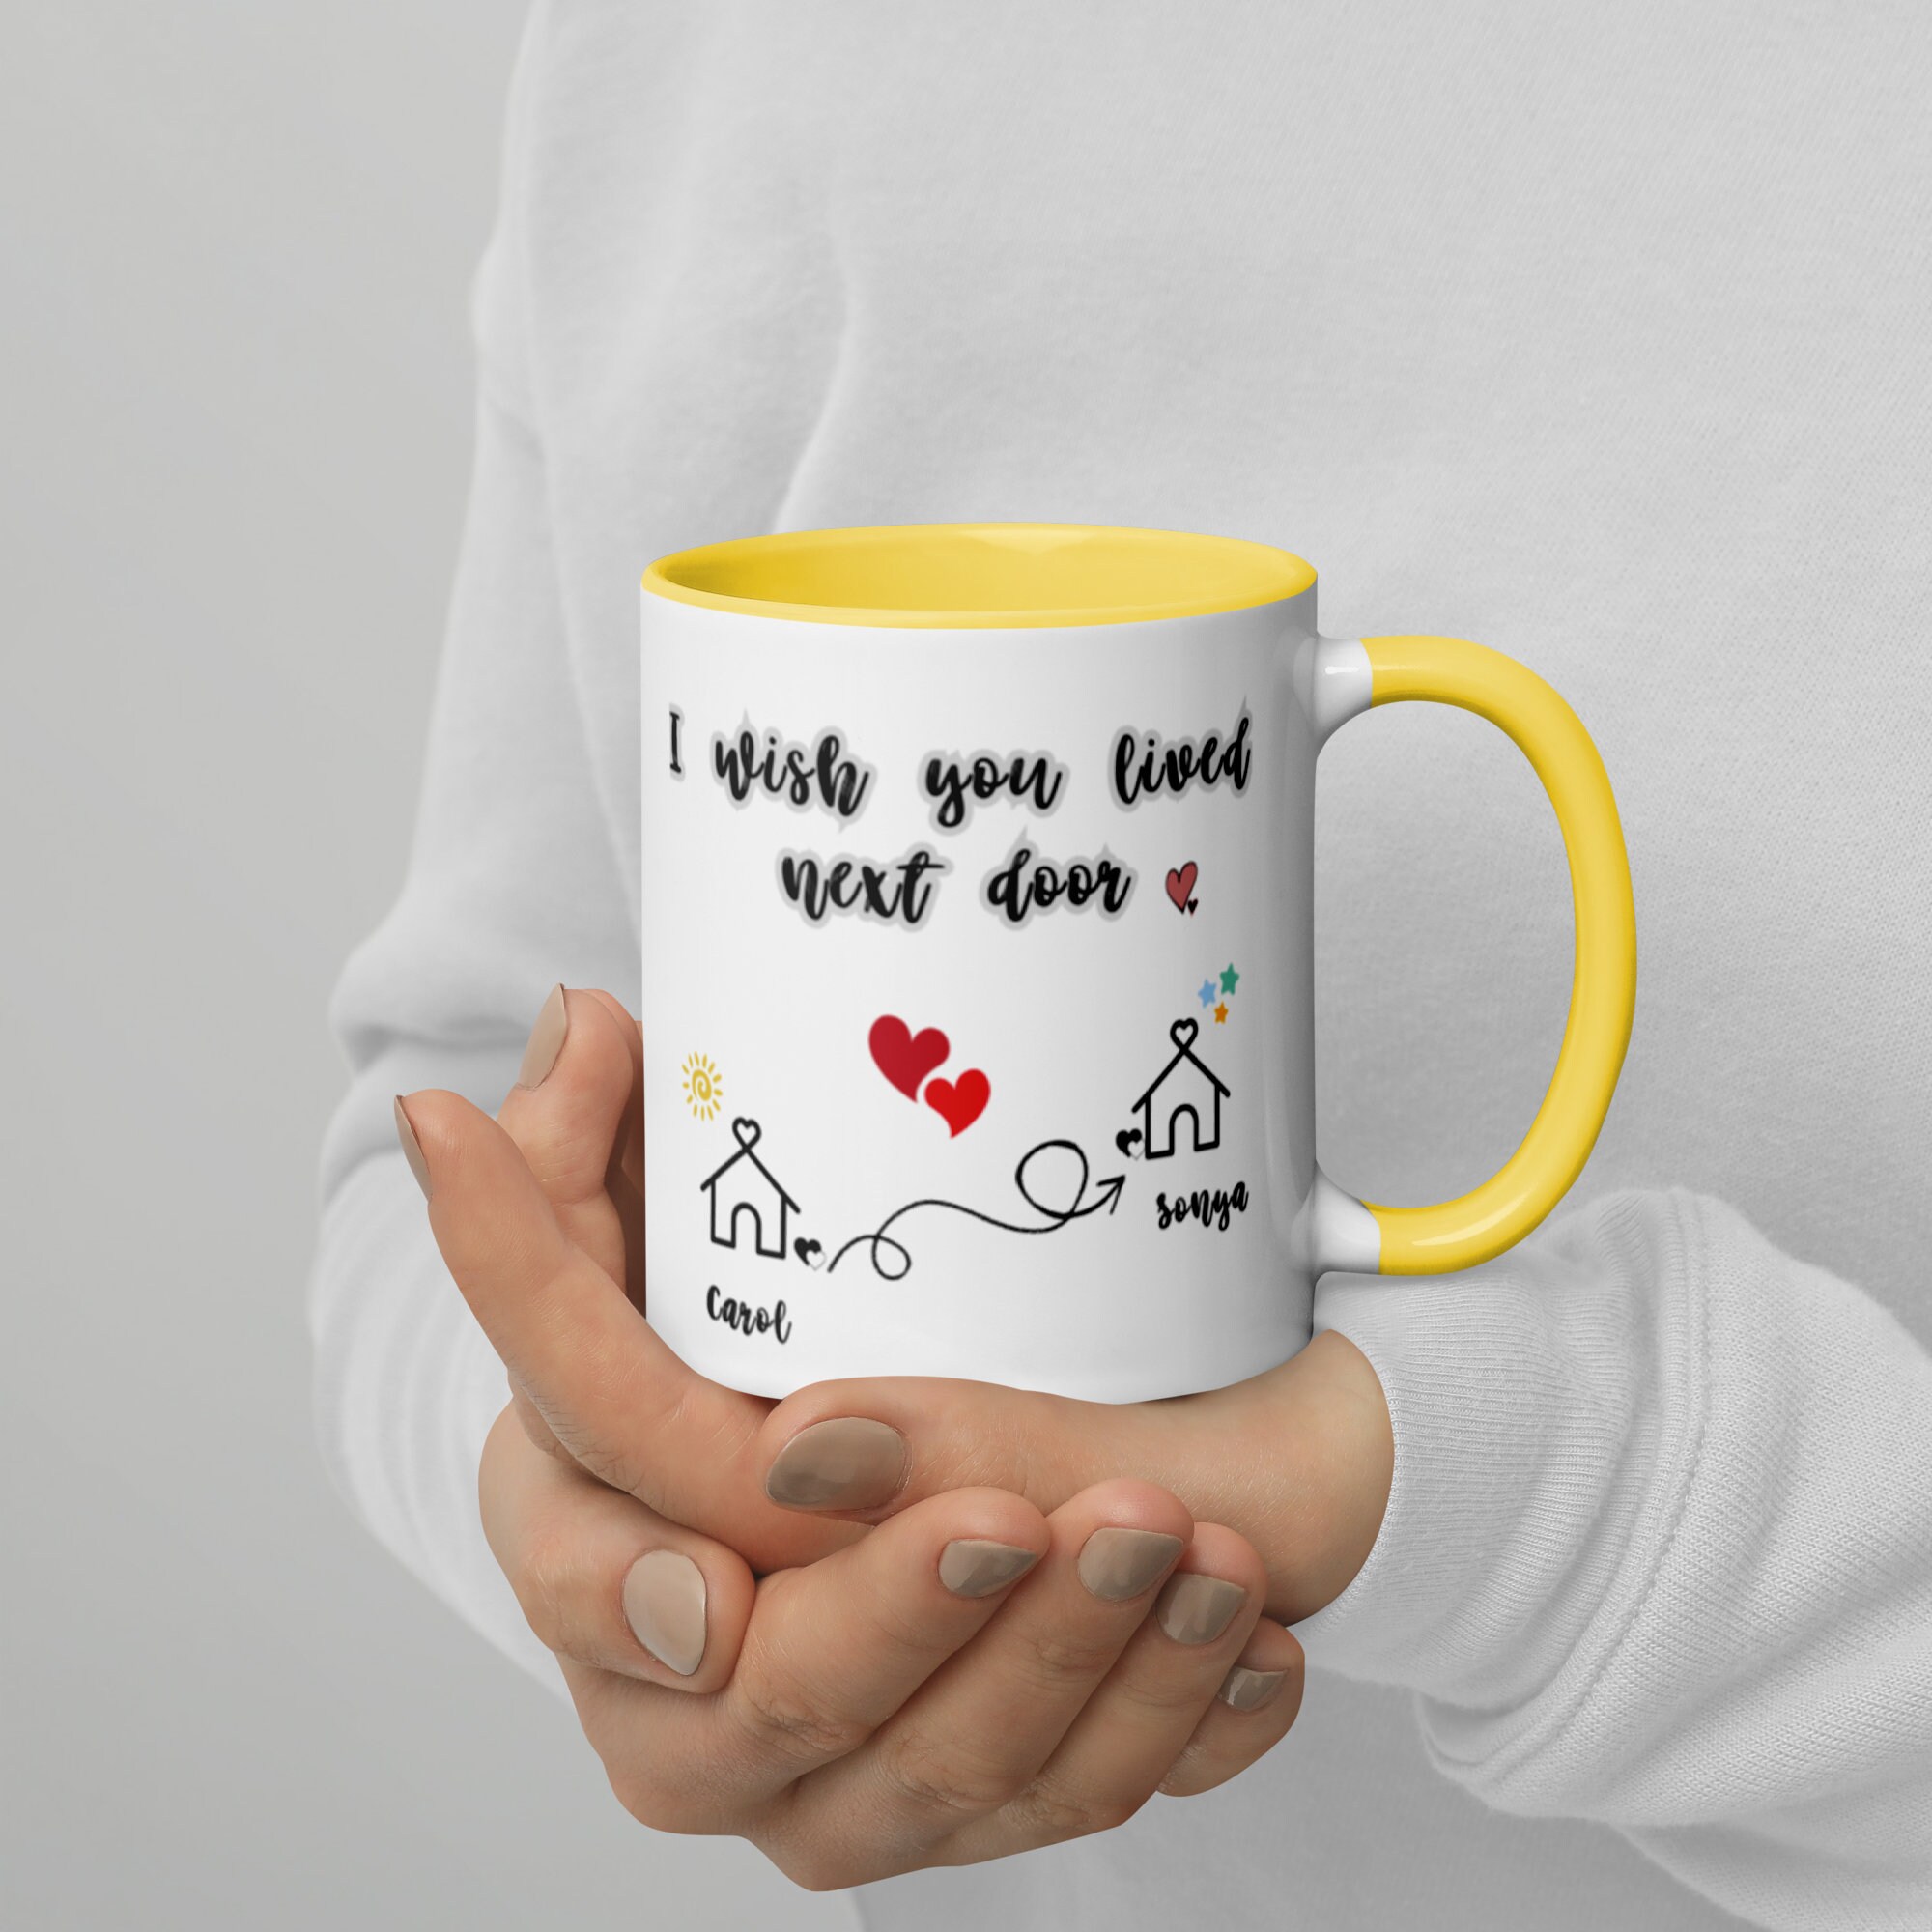 I'm so glad I Have a Friend like You” Photo Coffee Mug